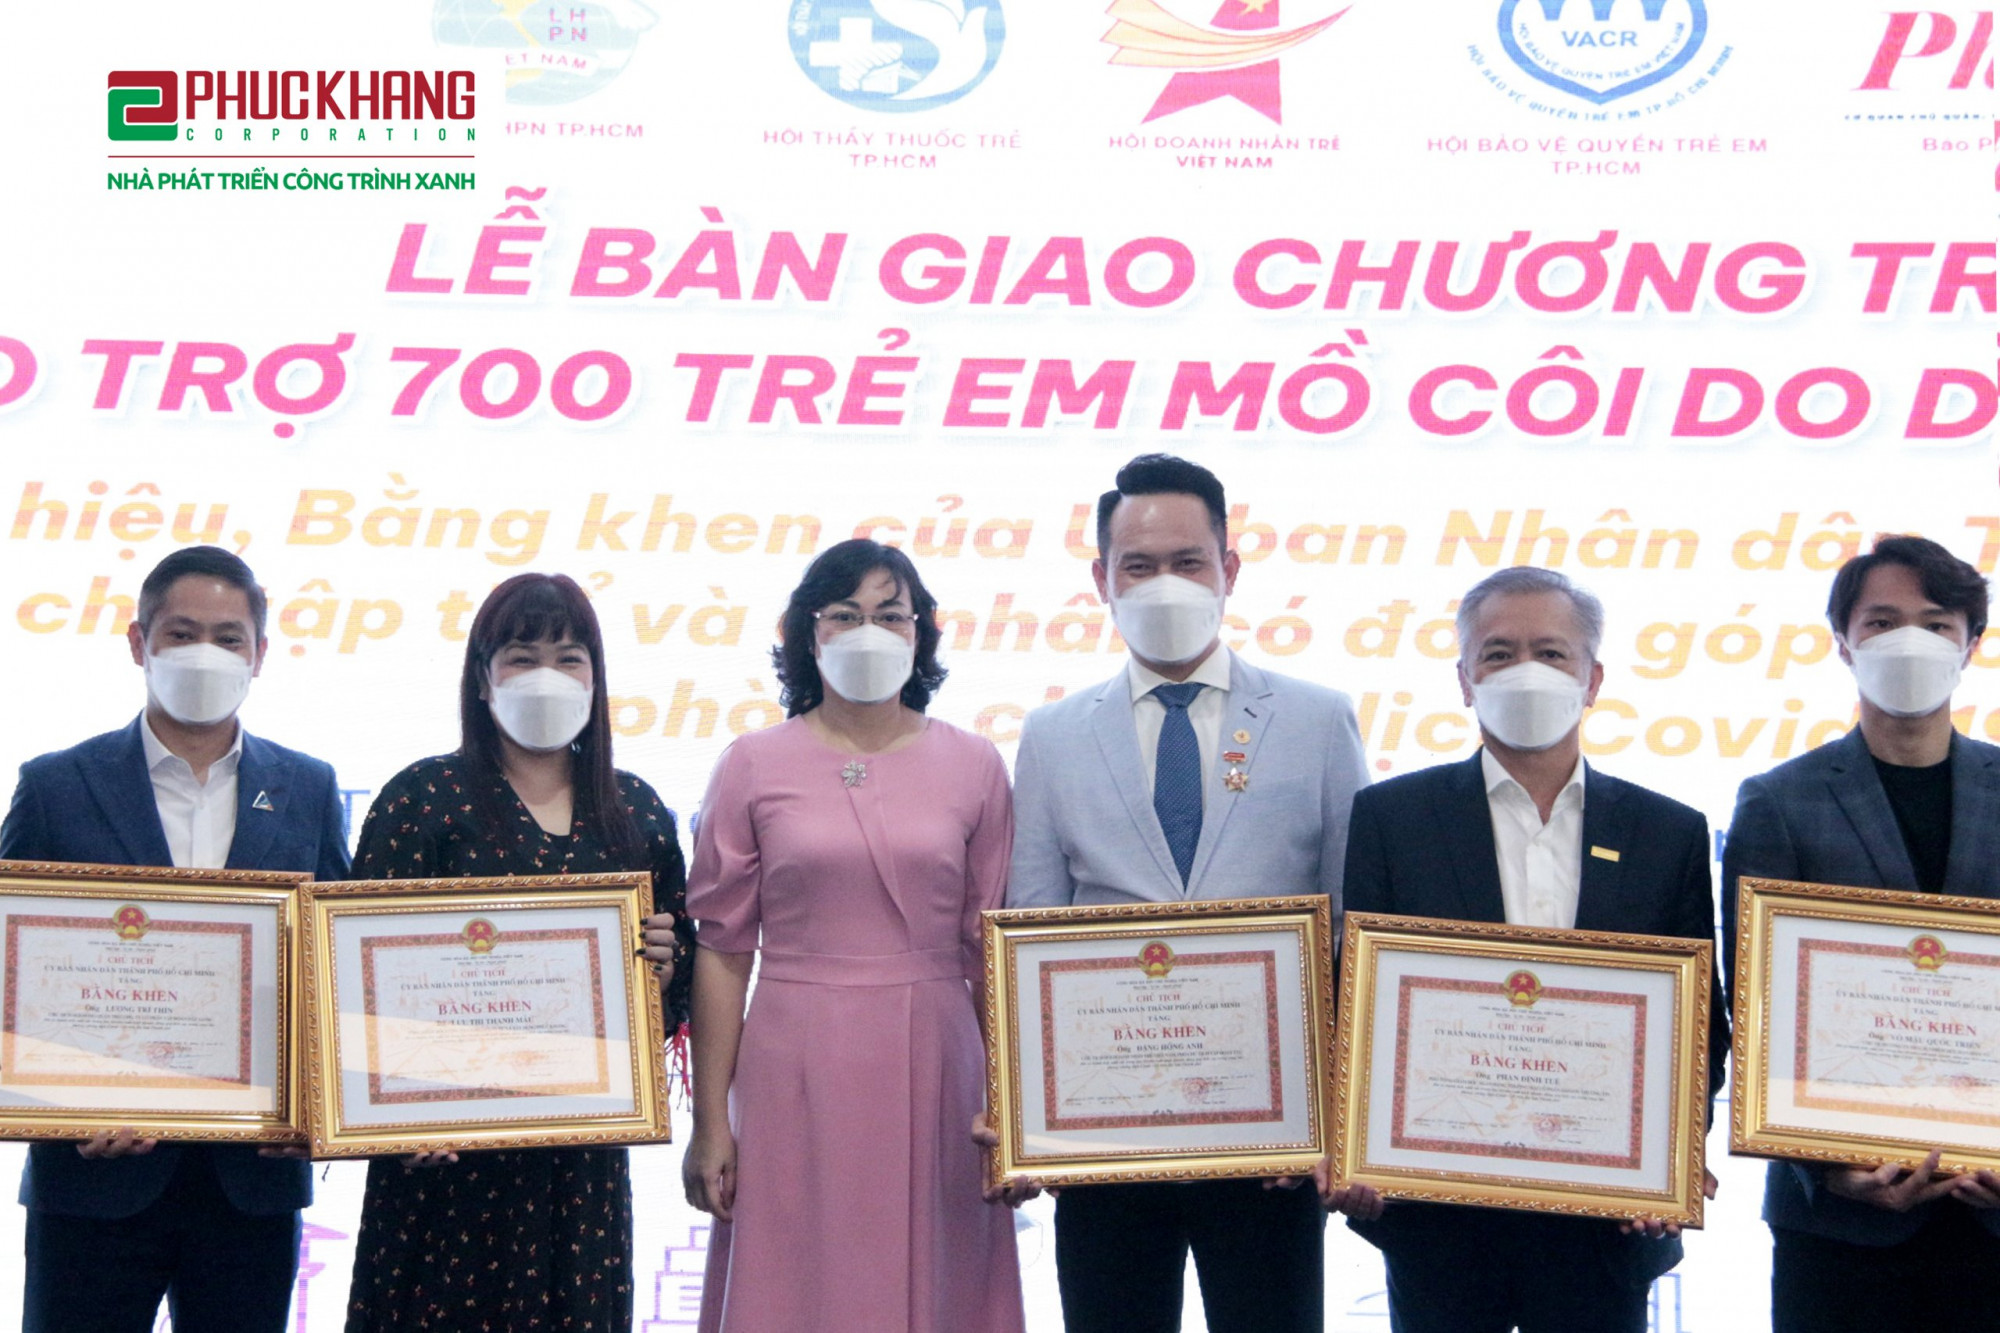 Bà Lưu Thị Thanh Mẫu (người đứng thứ 2 từ trái qua) đại diện Phuc Khang Corporation nhận bằng khen của UBND TPHCM cho tập thể, cá nhân có đóng góp trong công tác phòng, chống dịch COVID-19 - Ảnh: PK